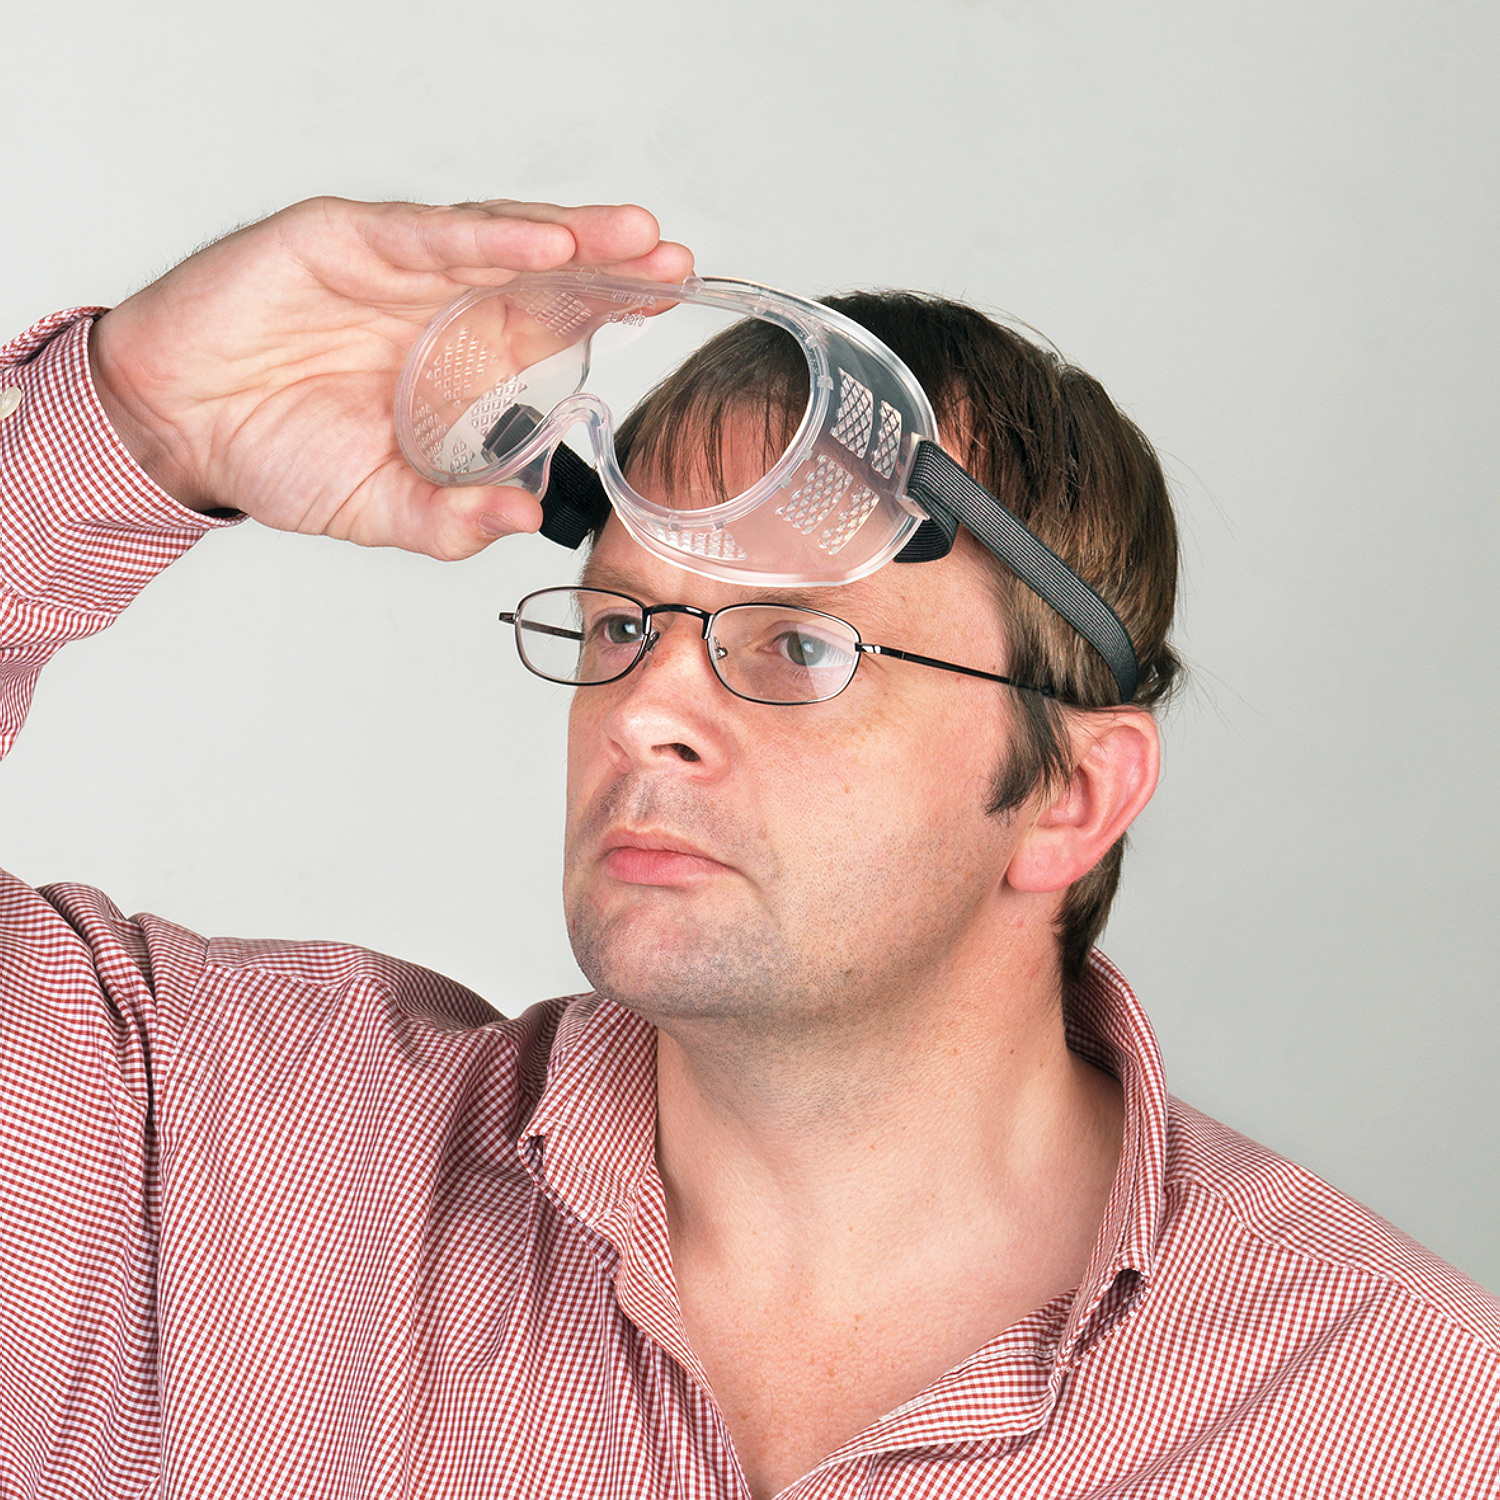 Connex Schutz- und Überbrille, verstellbar